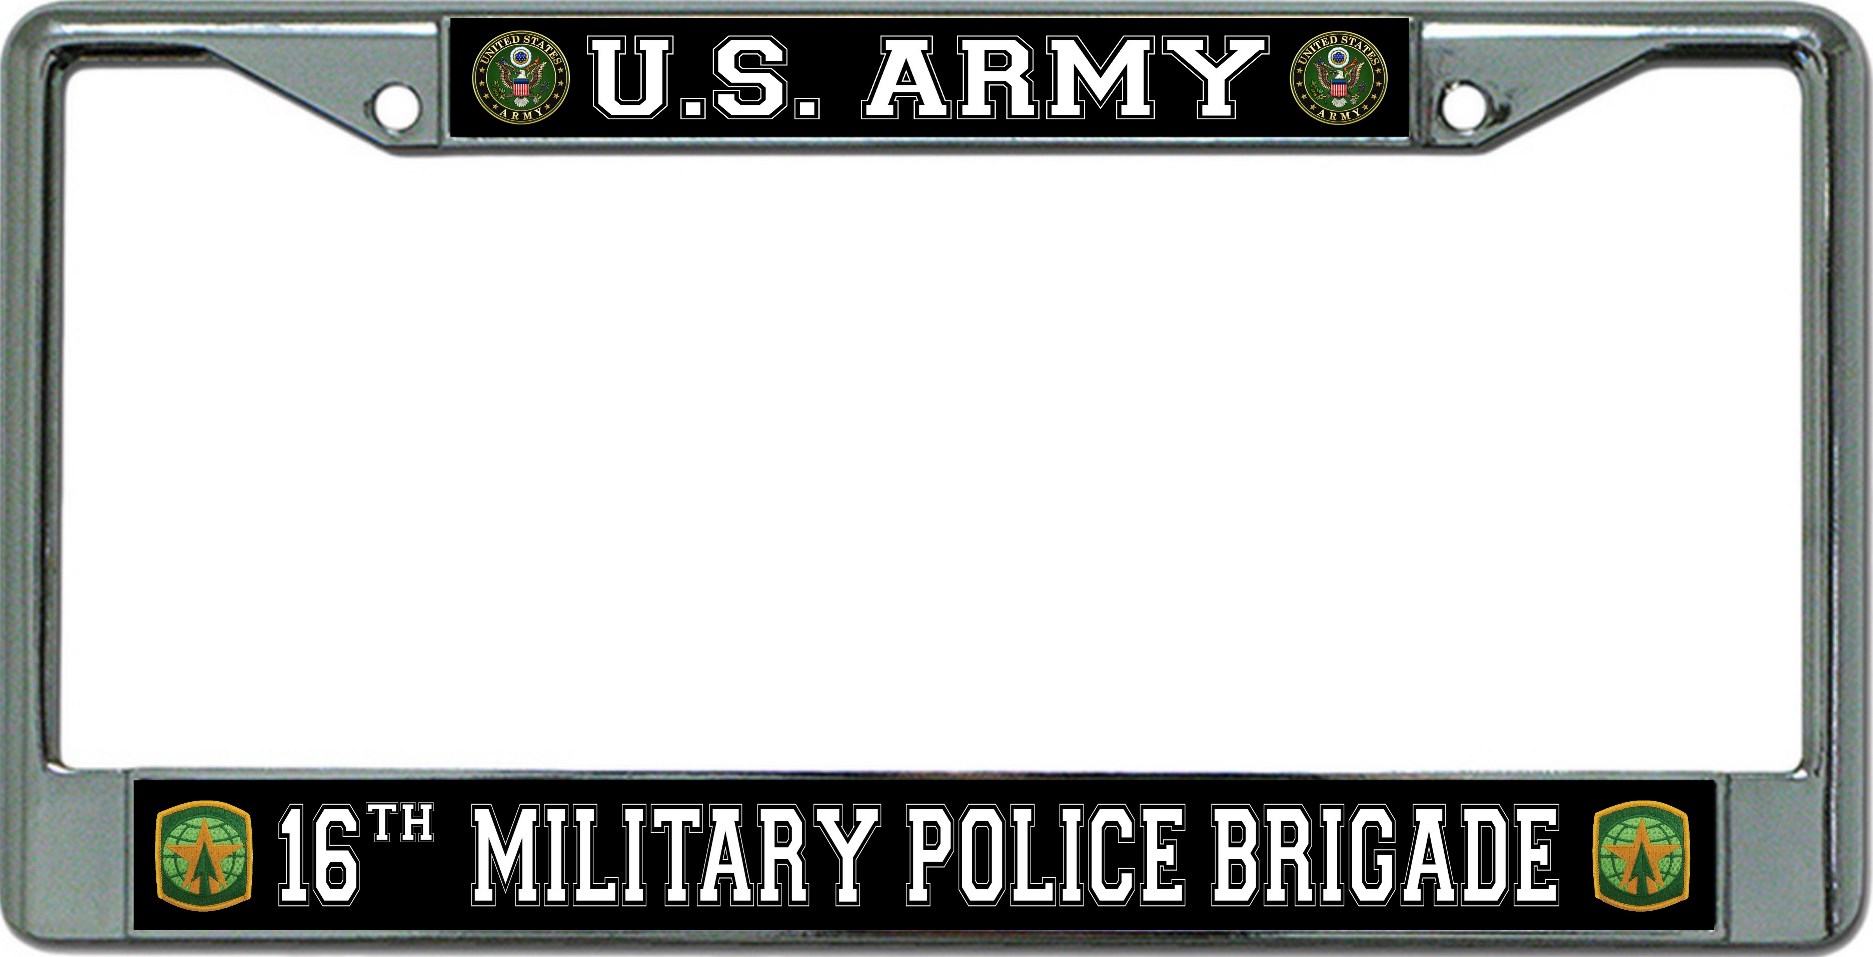 U.S. Army 16th Military Police Brigade Chrome License Plate FRAME